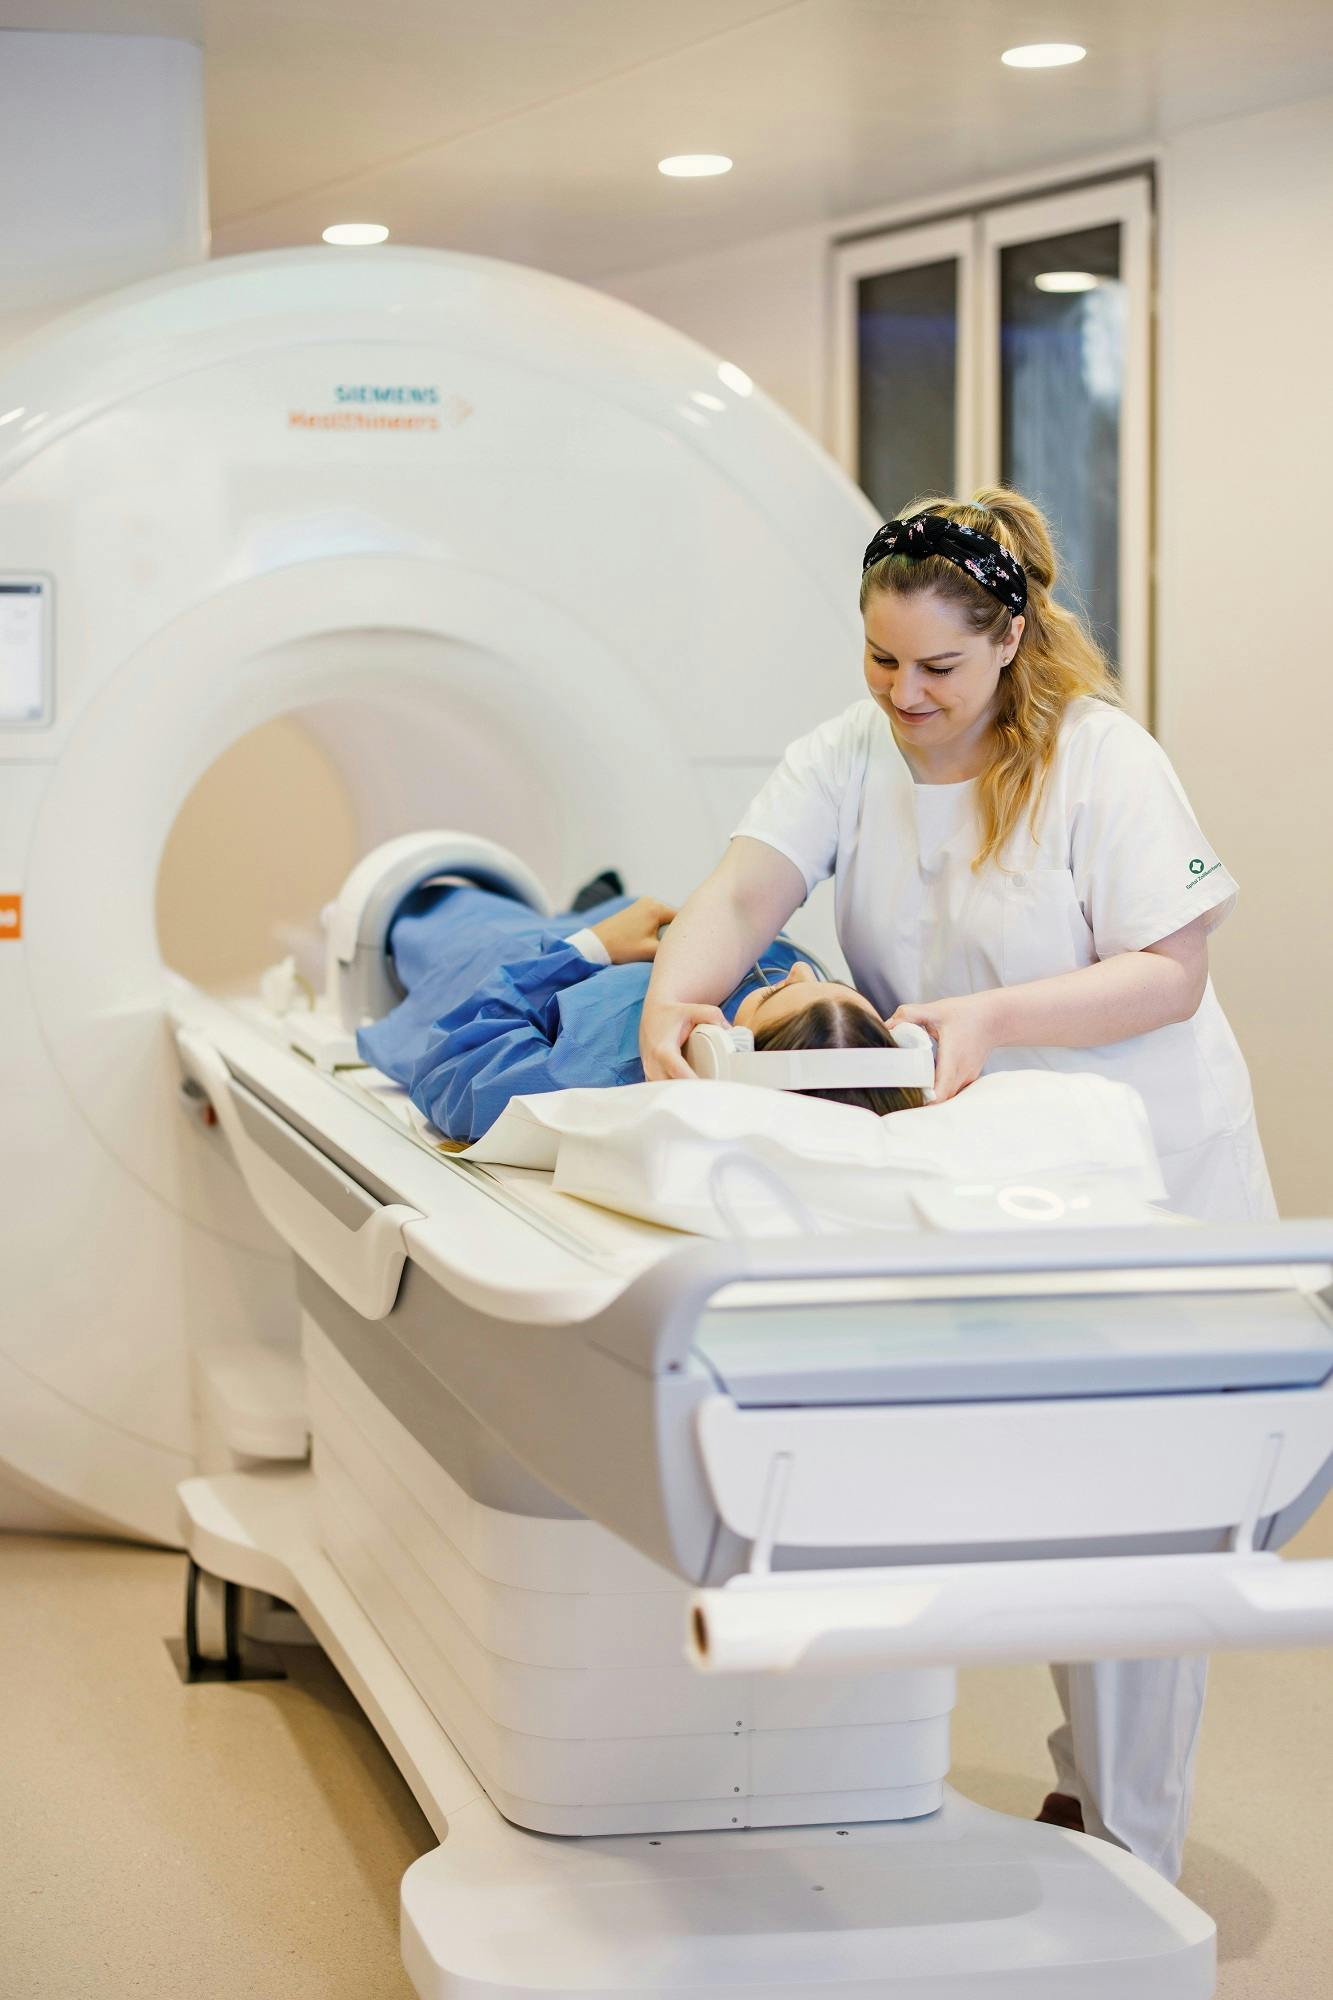 Medizinische Fachkraft bereitet Patienten auf MRT-Untersuchung vor.